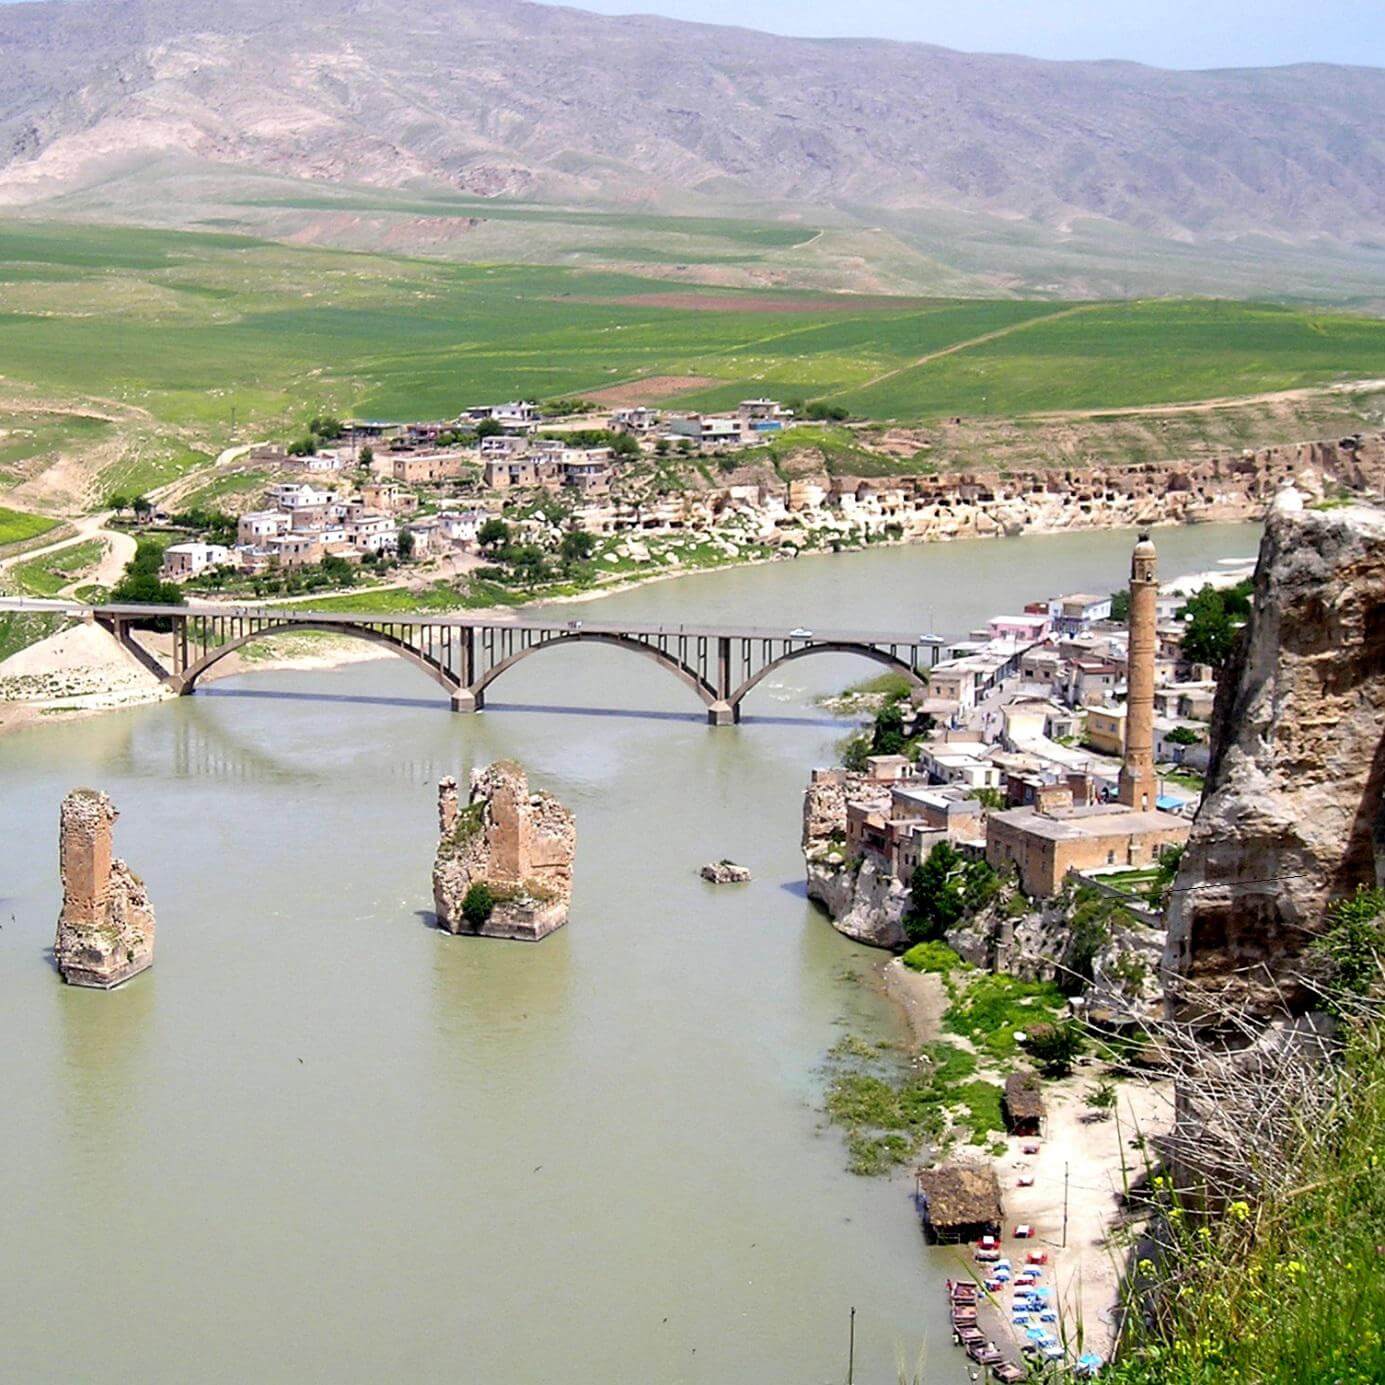 Město Hasankeyf, které bude částečně zaplaveno novou vodní elektrárnou Ilisu (zdroj Wikipedie)